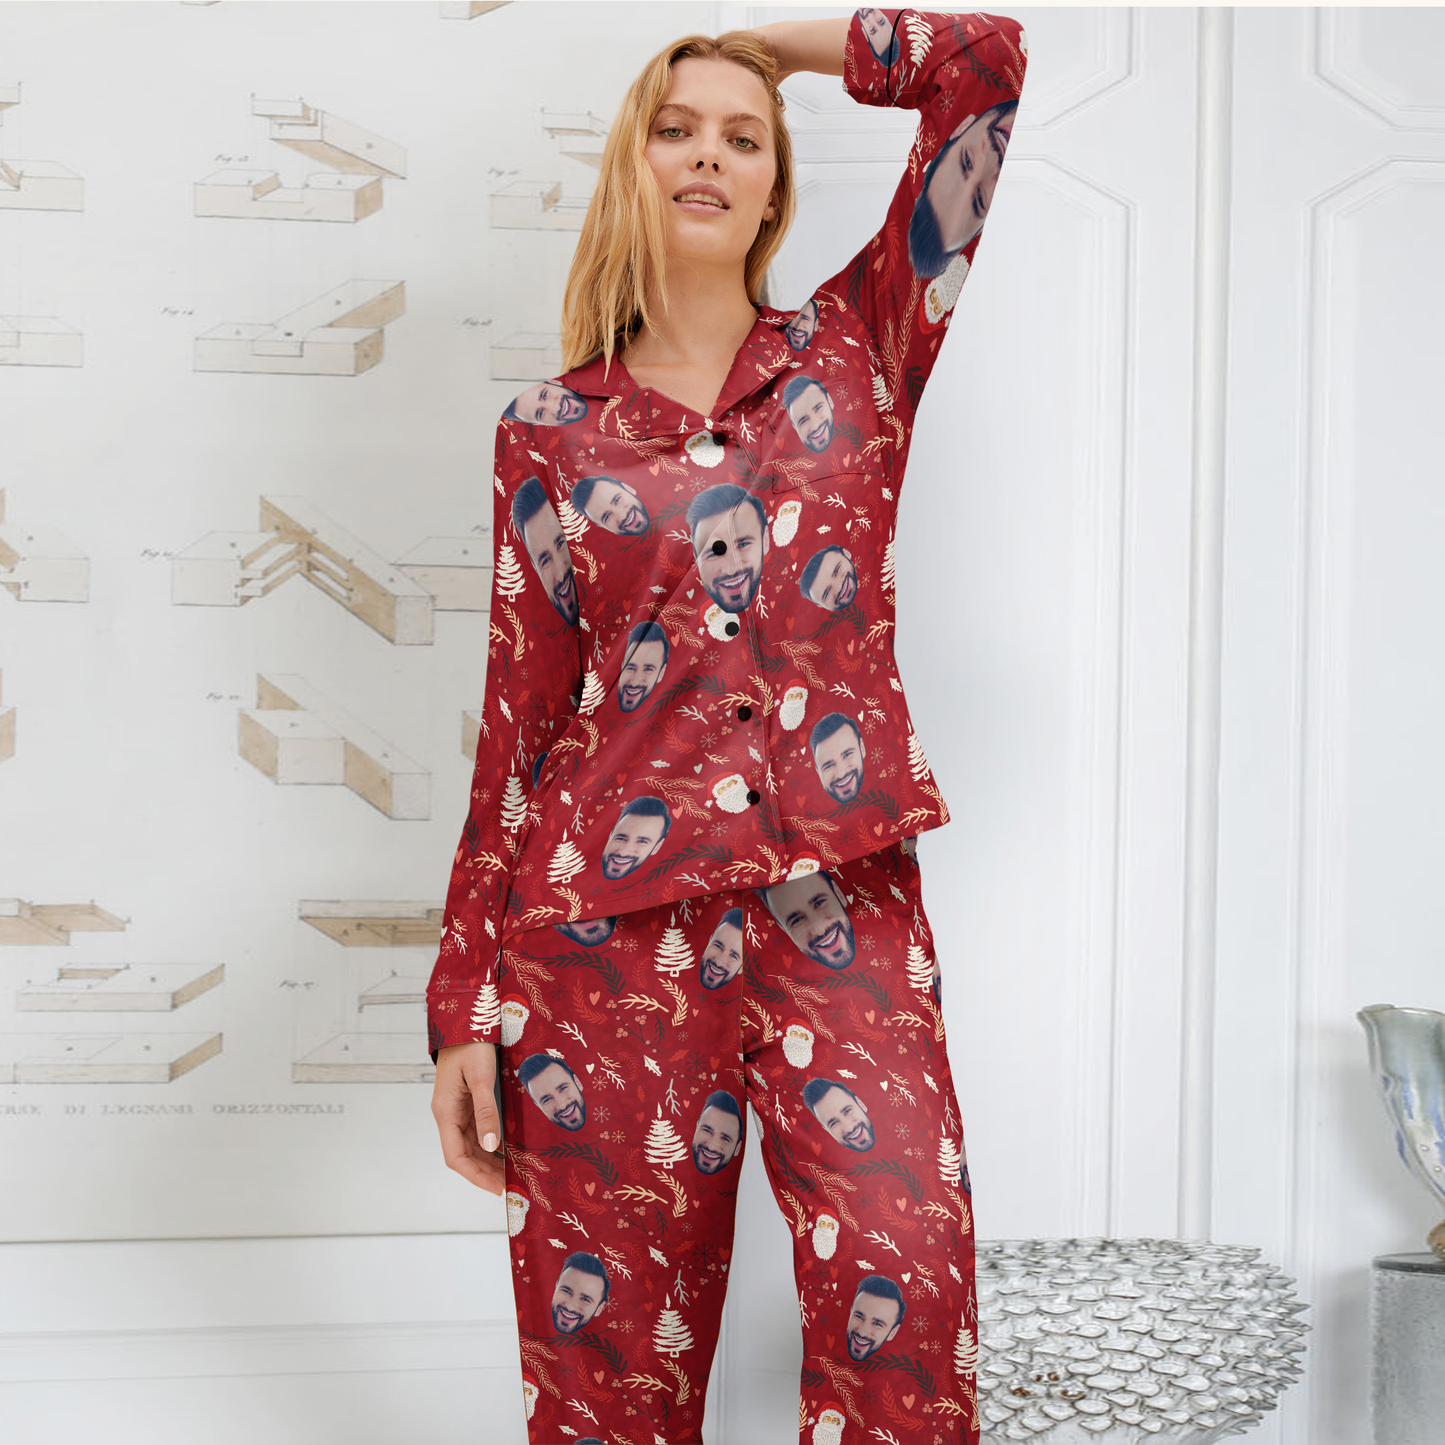 Husband Face - Personalized Photo Pajamas Set